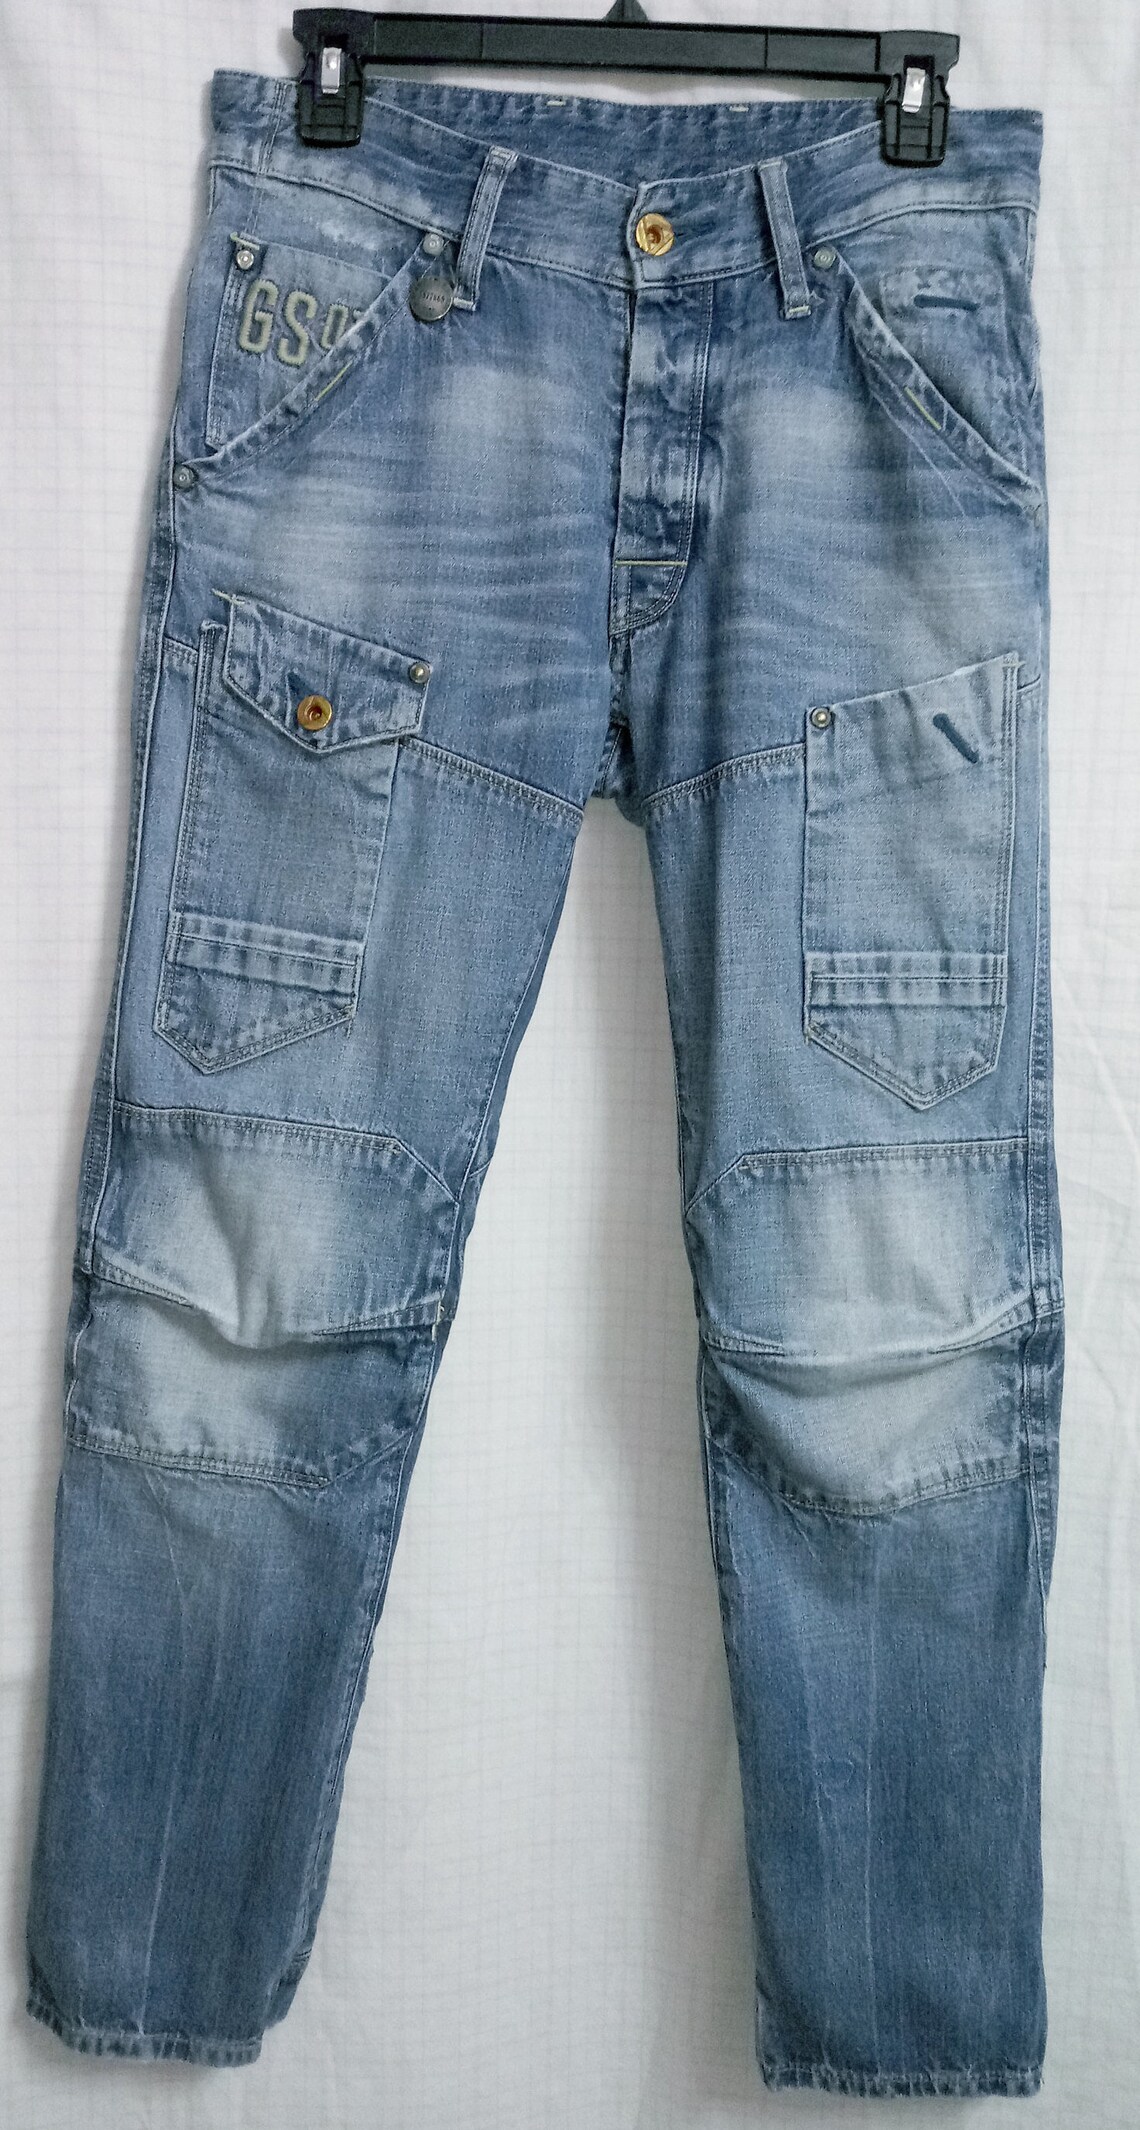 G-STAR 0riginals Raw Vtg Men's Biker Jeans Rare 3301 - Etsy